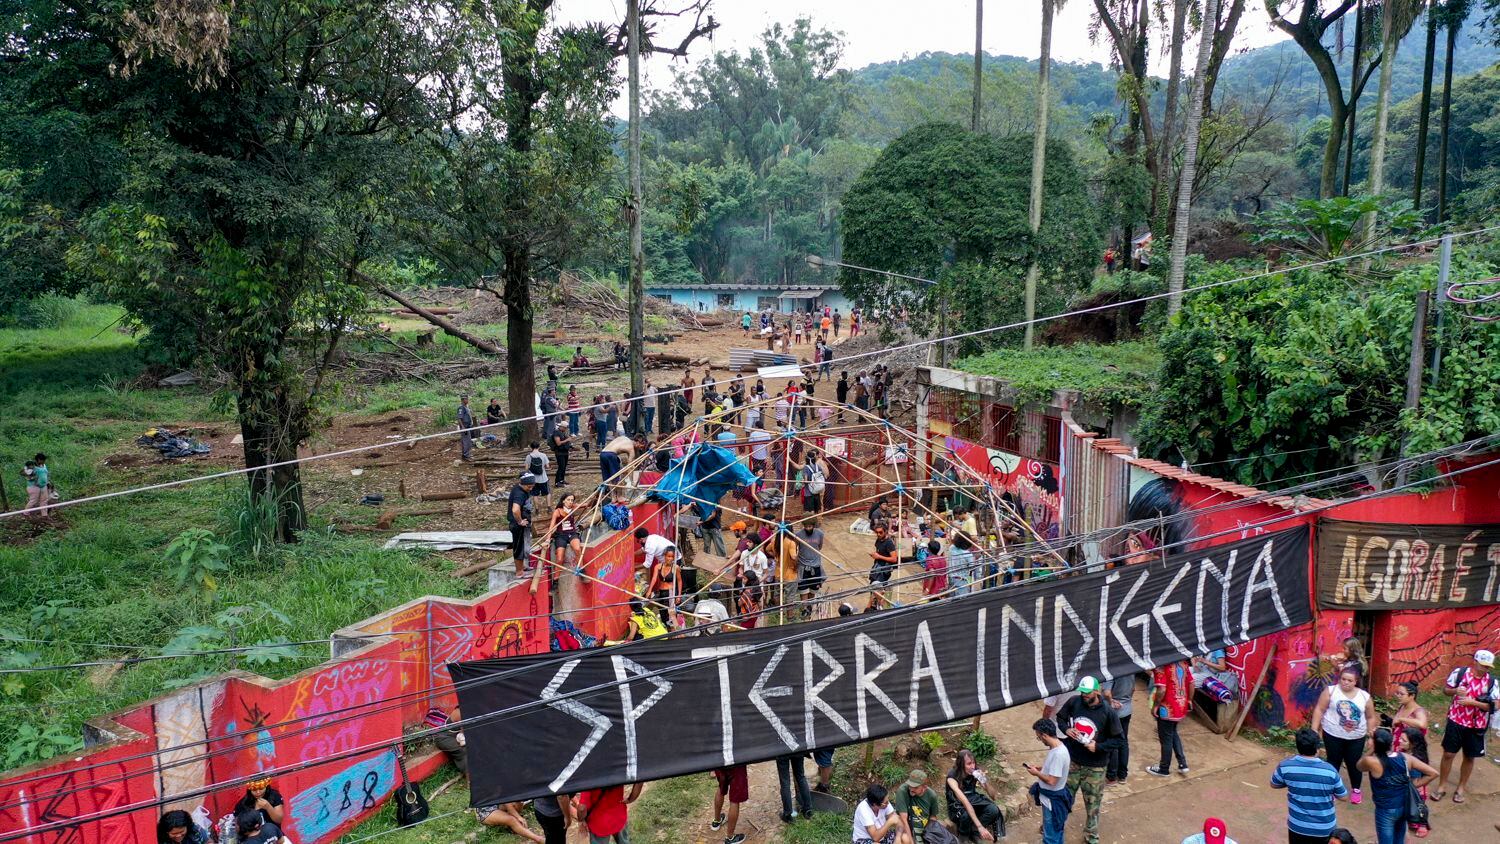 Os Indígenas da etnia Guarani Mbya ocupam a entrada do terreno onde construtora pretende construir torres residenciais.